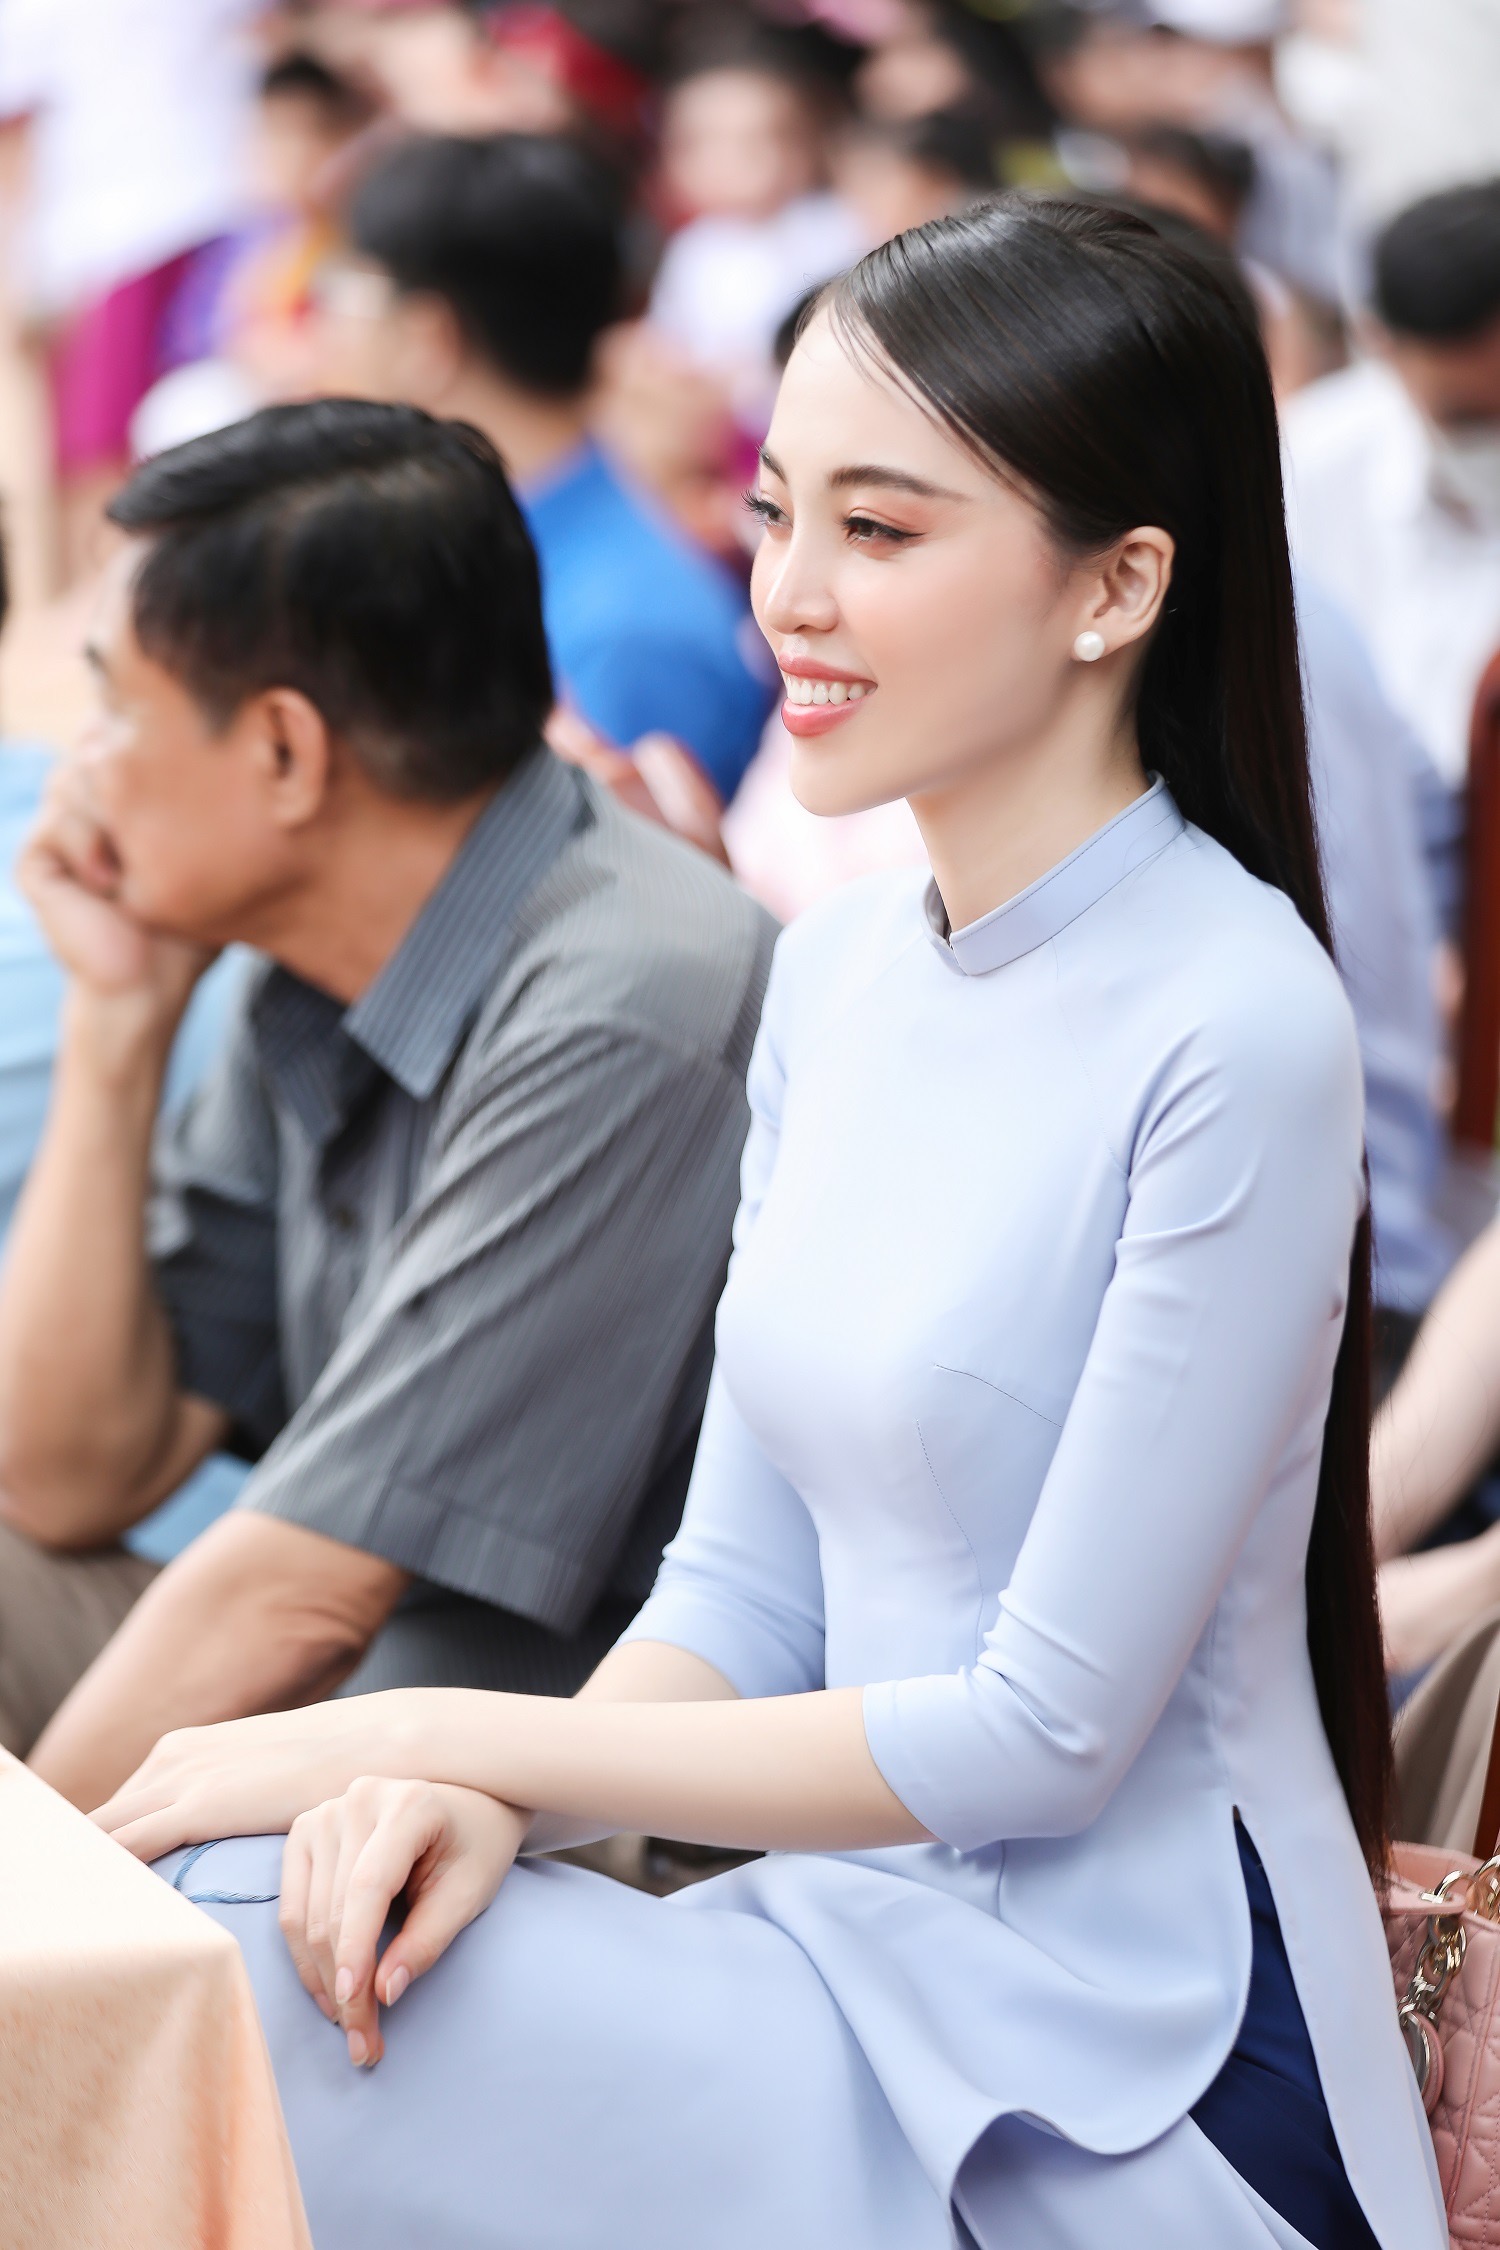  Siêu mẫu My Lê duyên dáng áo dài dự lễ mừng Ngày nhà giáo Việt Nam